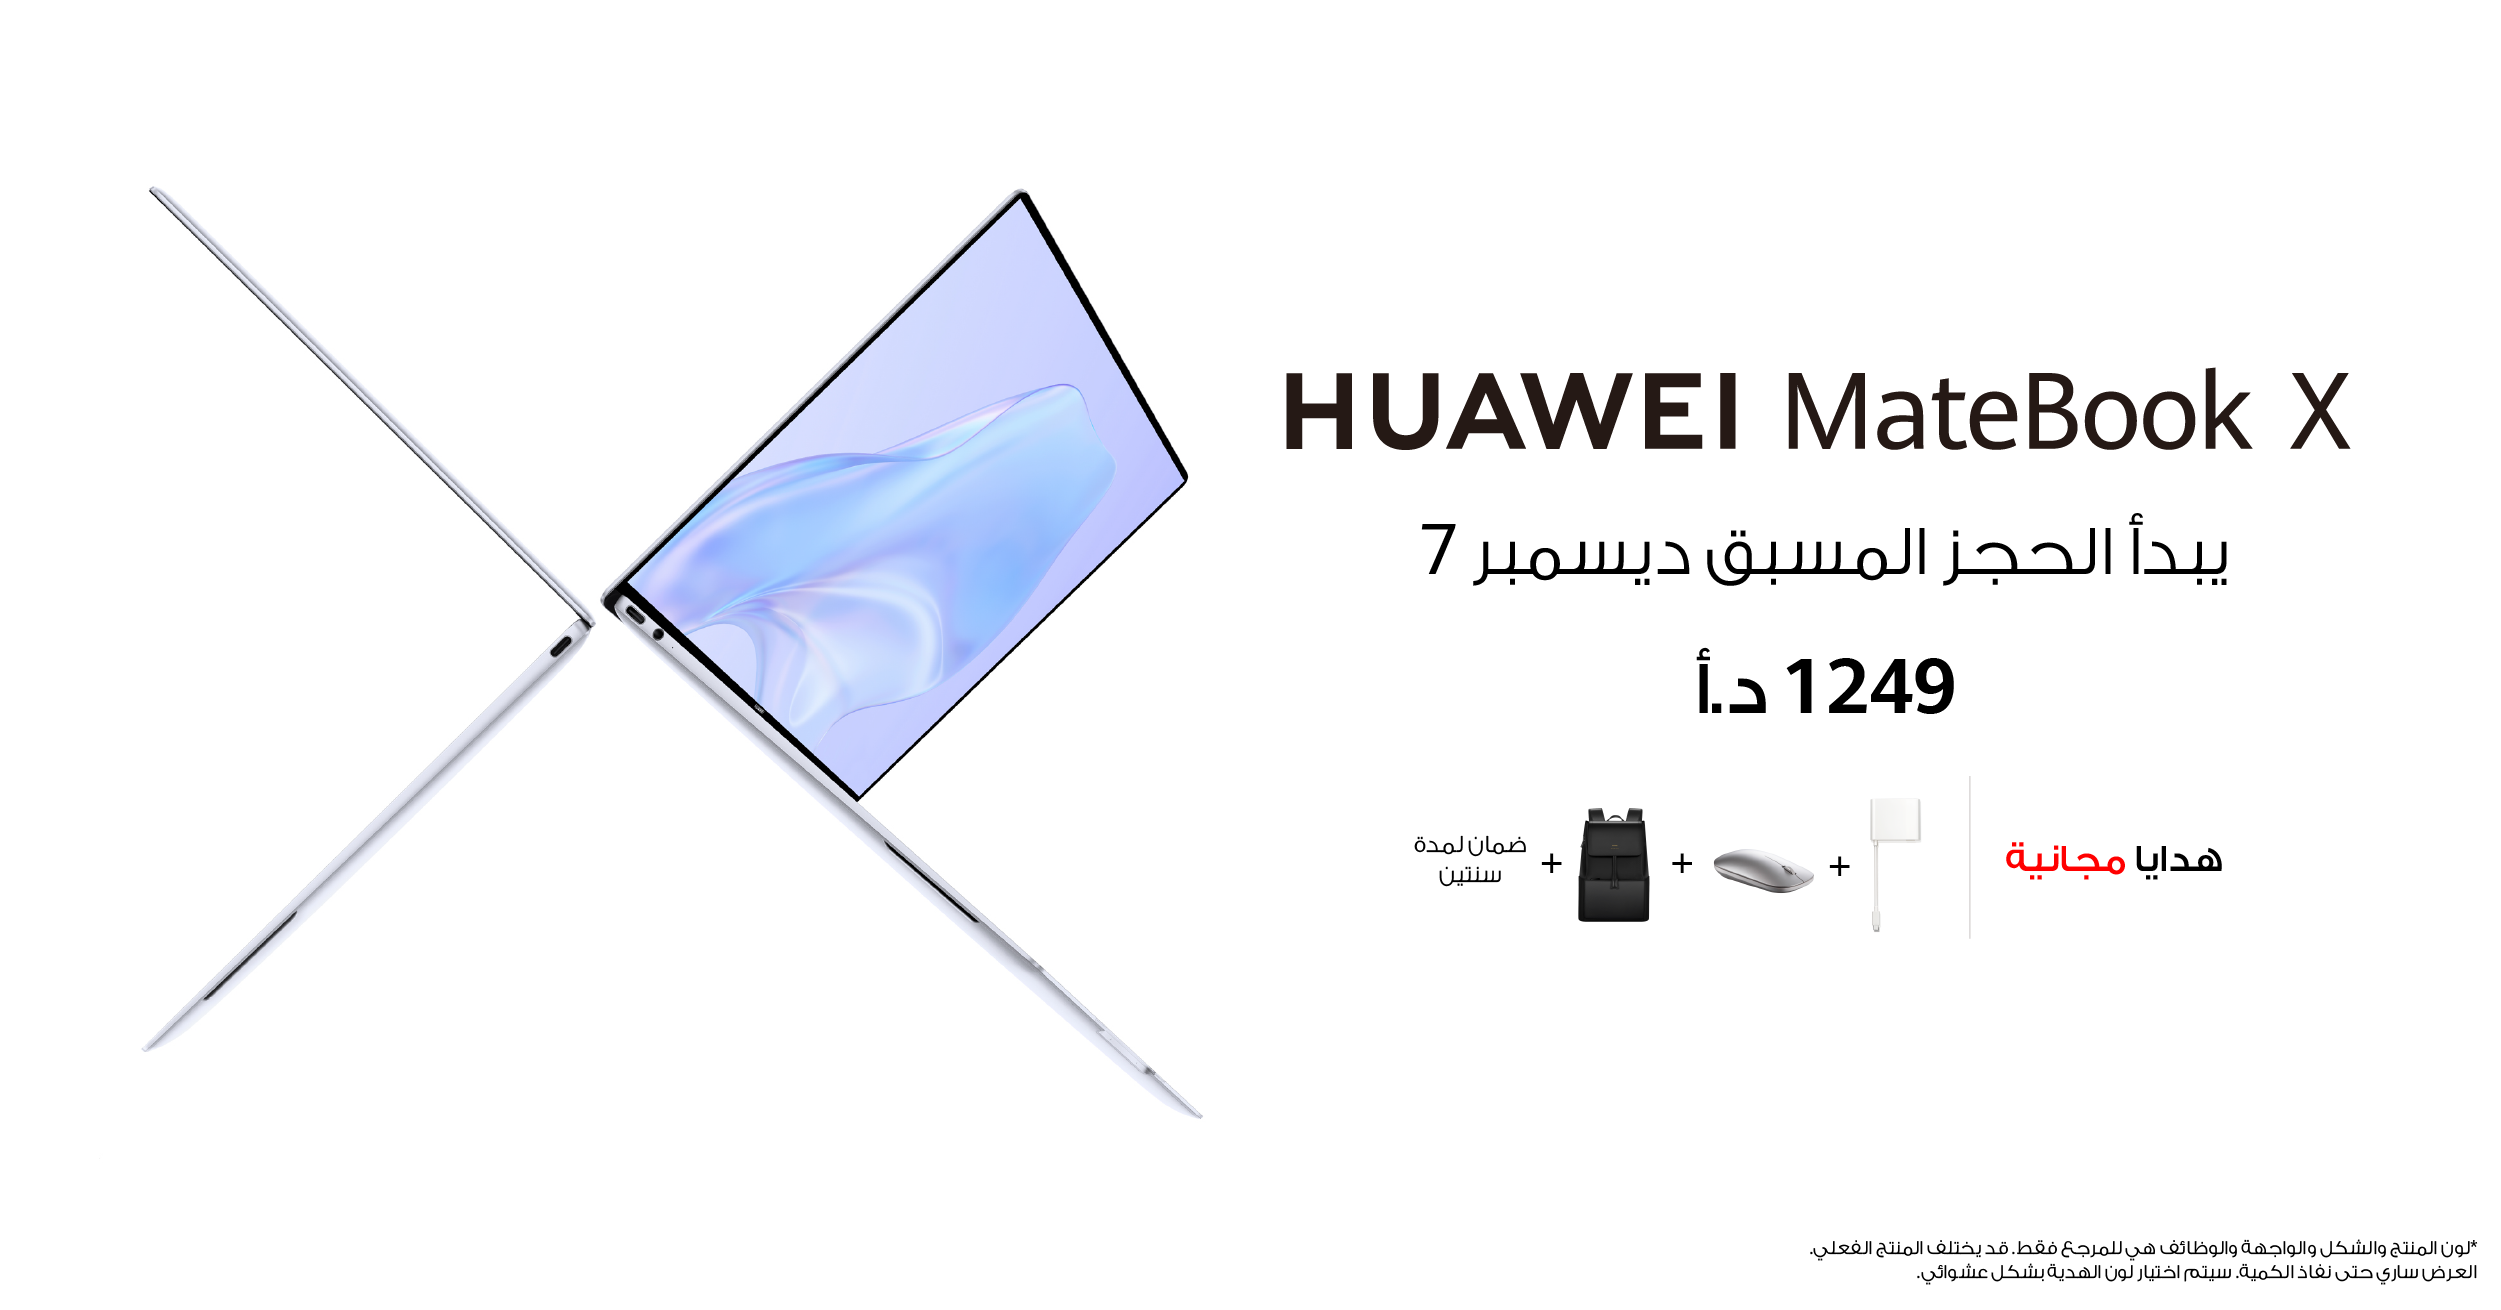 7 أسباب تجعل الحاسوب الشخصي Huawei MateBook X الجديد خيارك المثالي